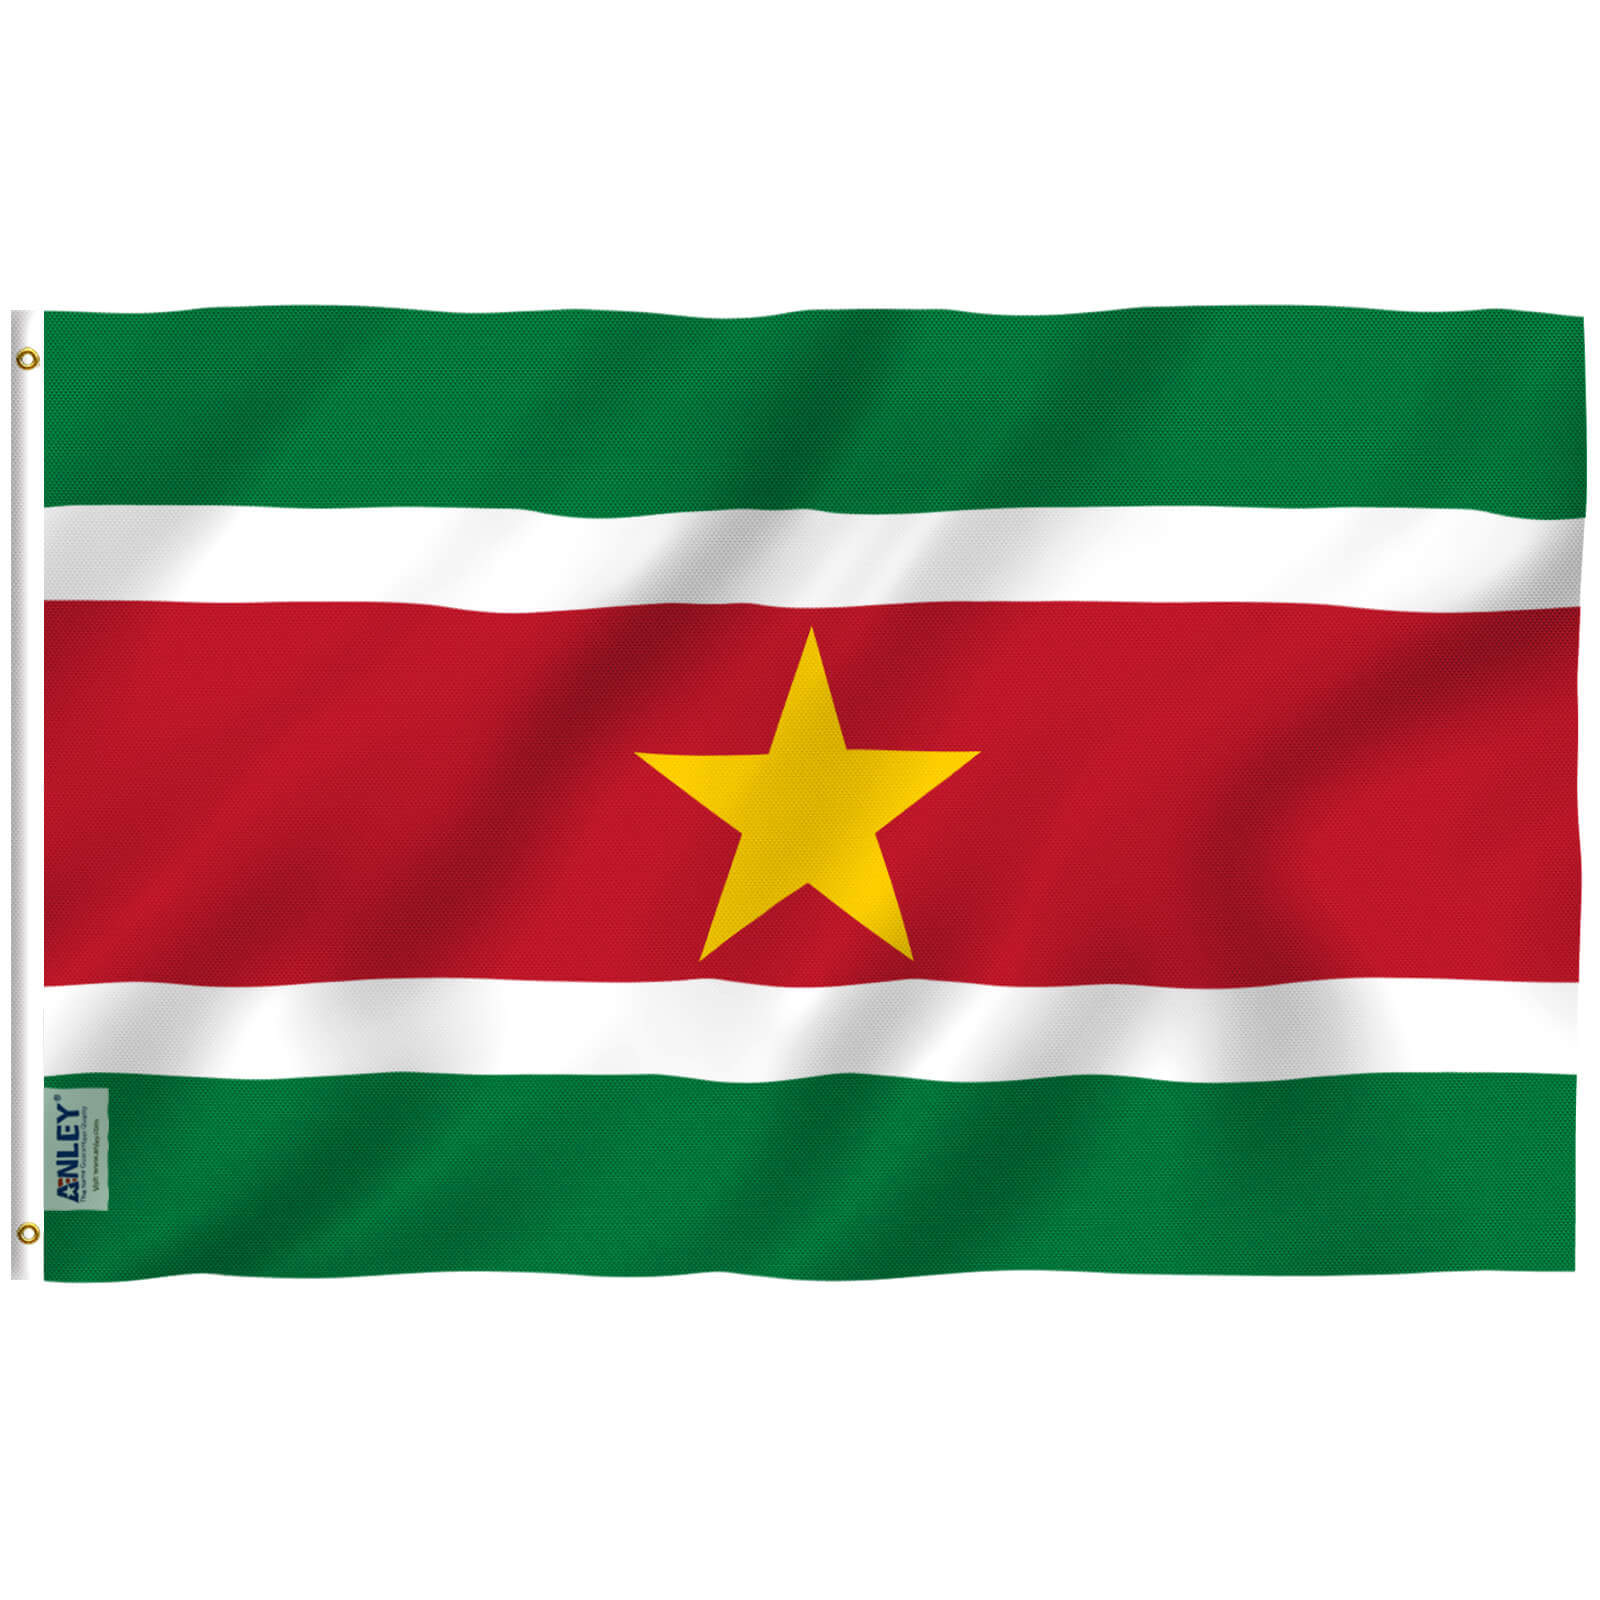 Terzijde Naleving van leren Fly Breeze Suriname Flag 3x5 Foot - Anley Flags